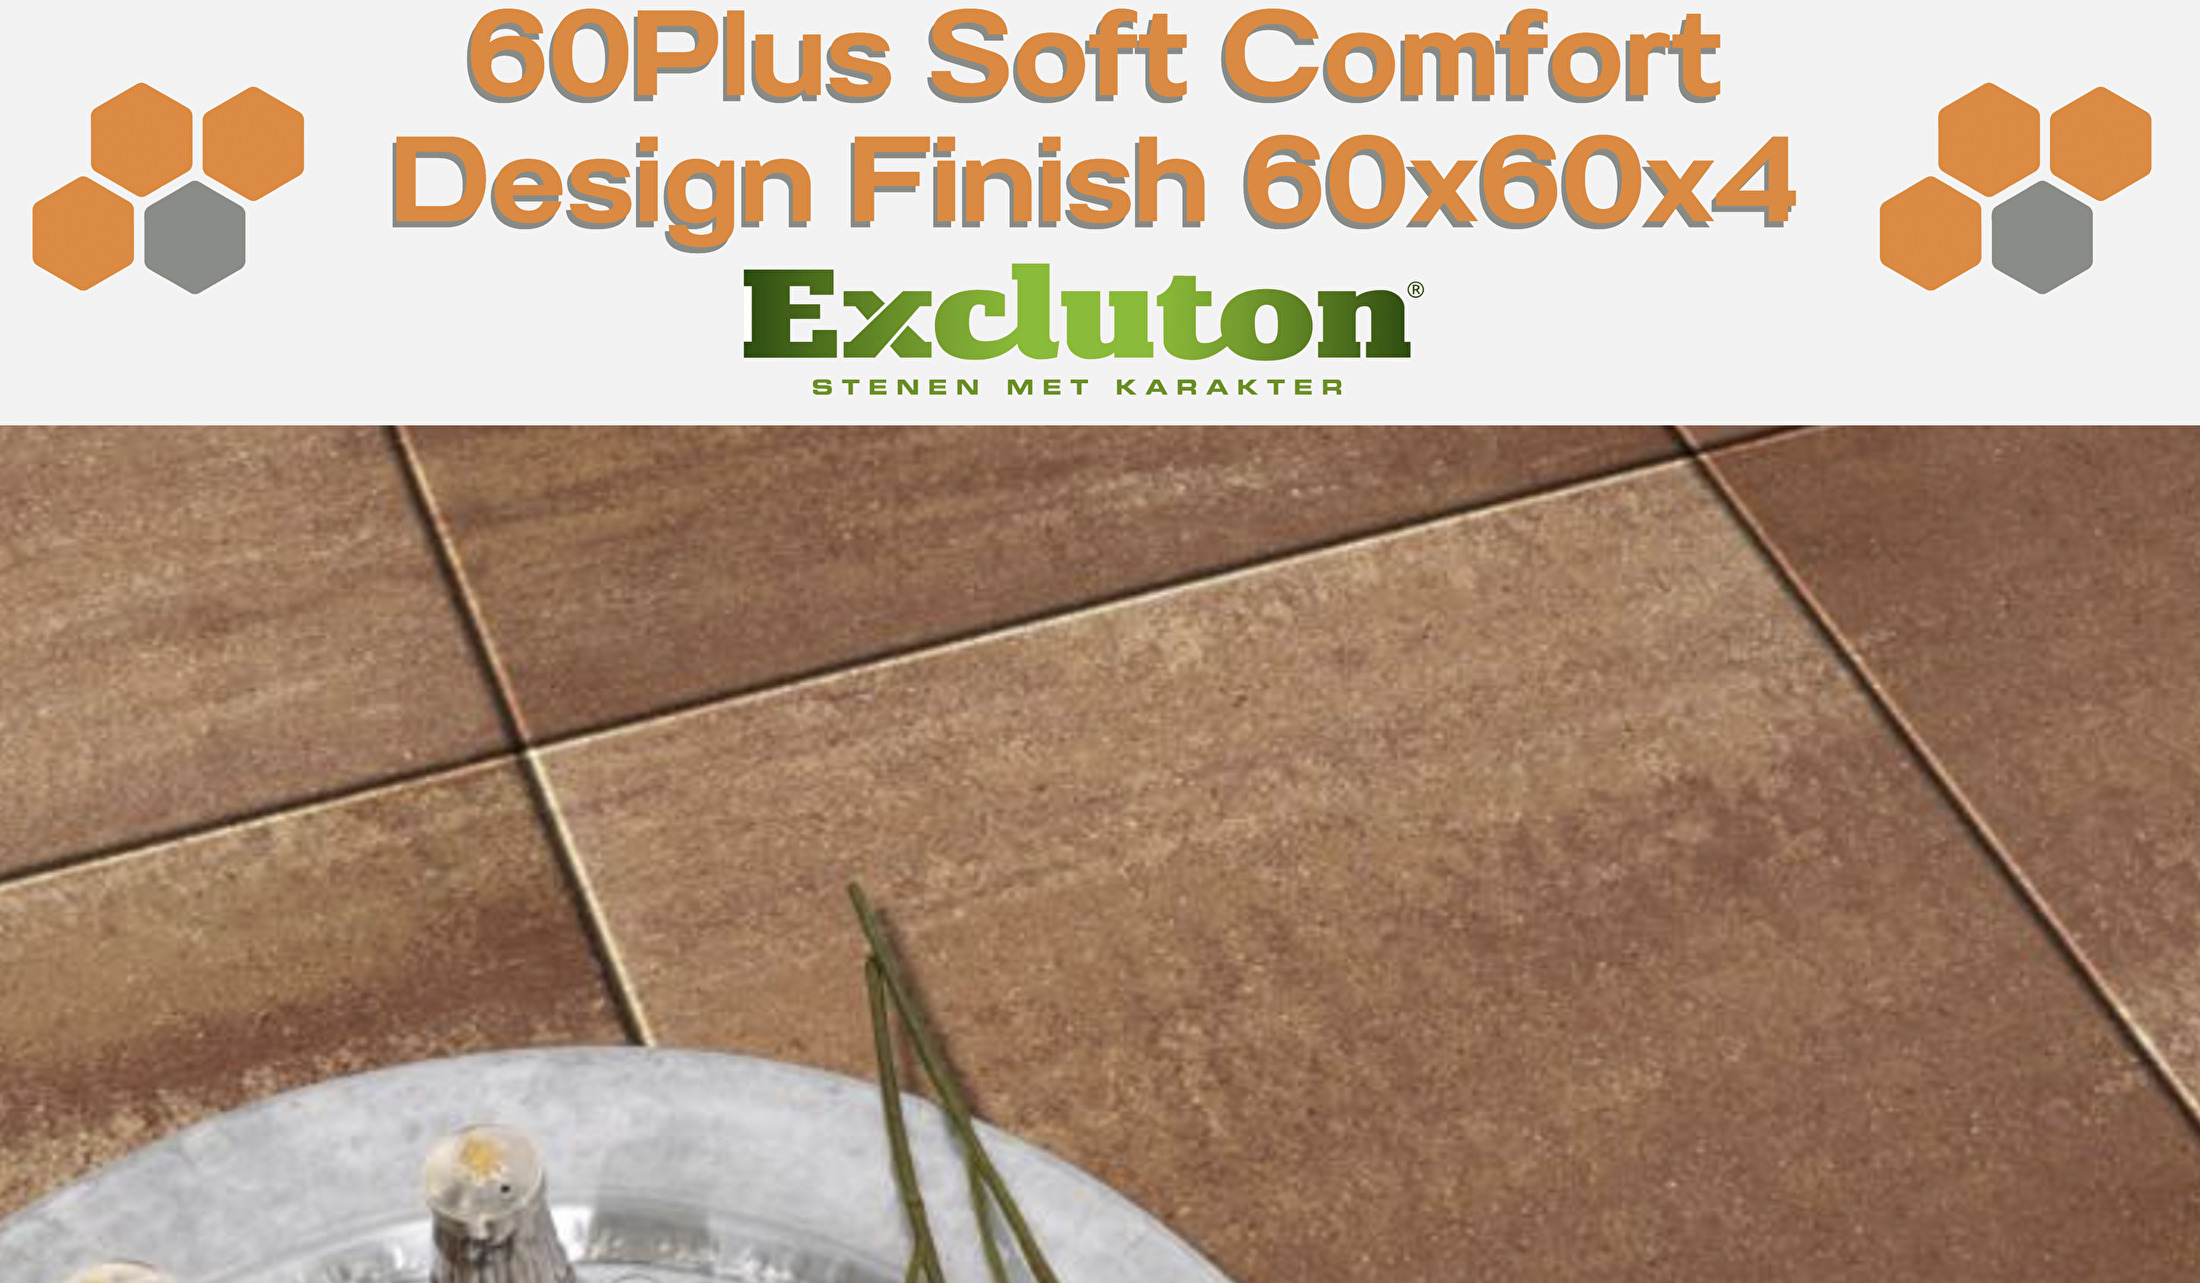 60Plus Soft Comfort Design Finish